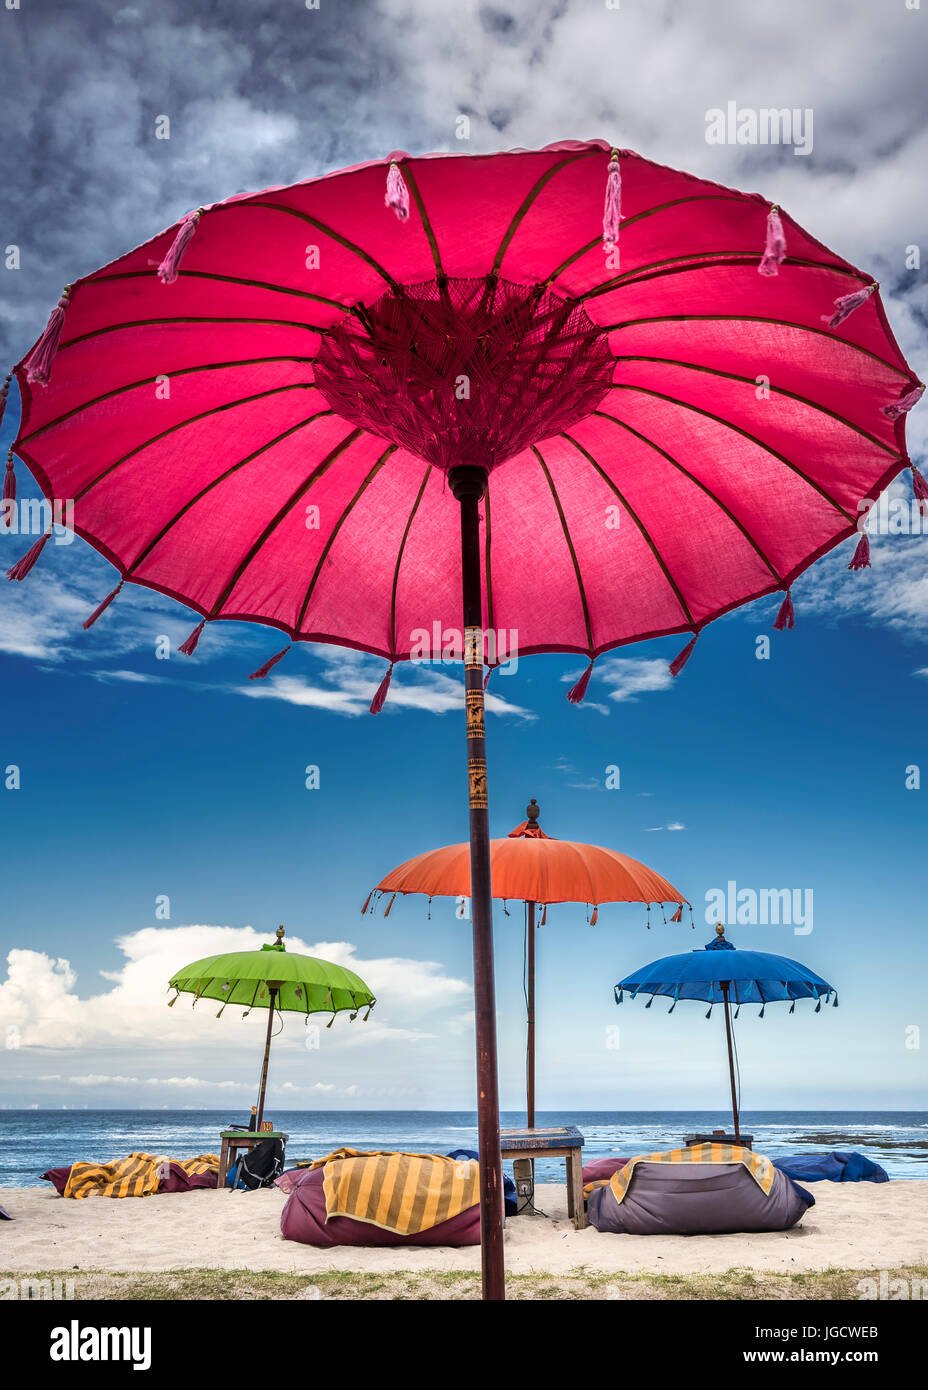 Multi-colored umbrellas on the beach, Bali, Indonesia Stock Photo